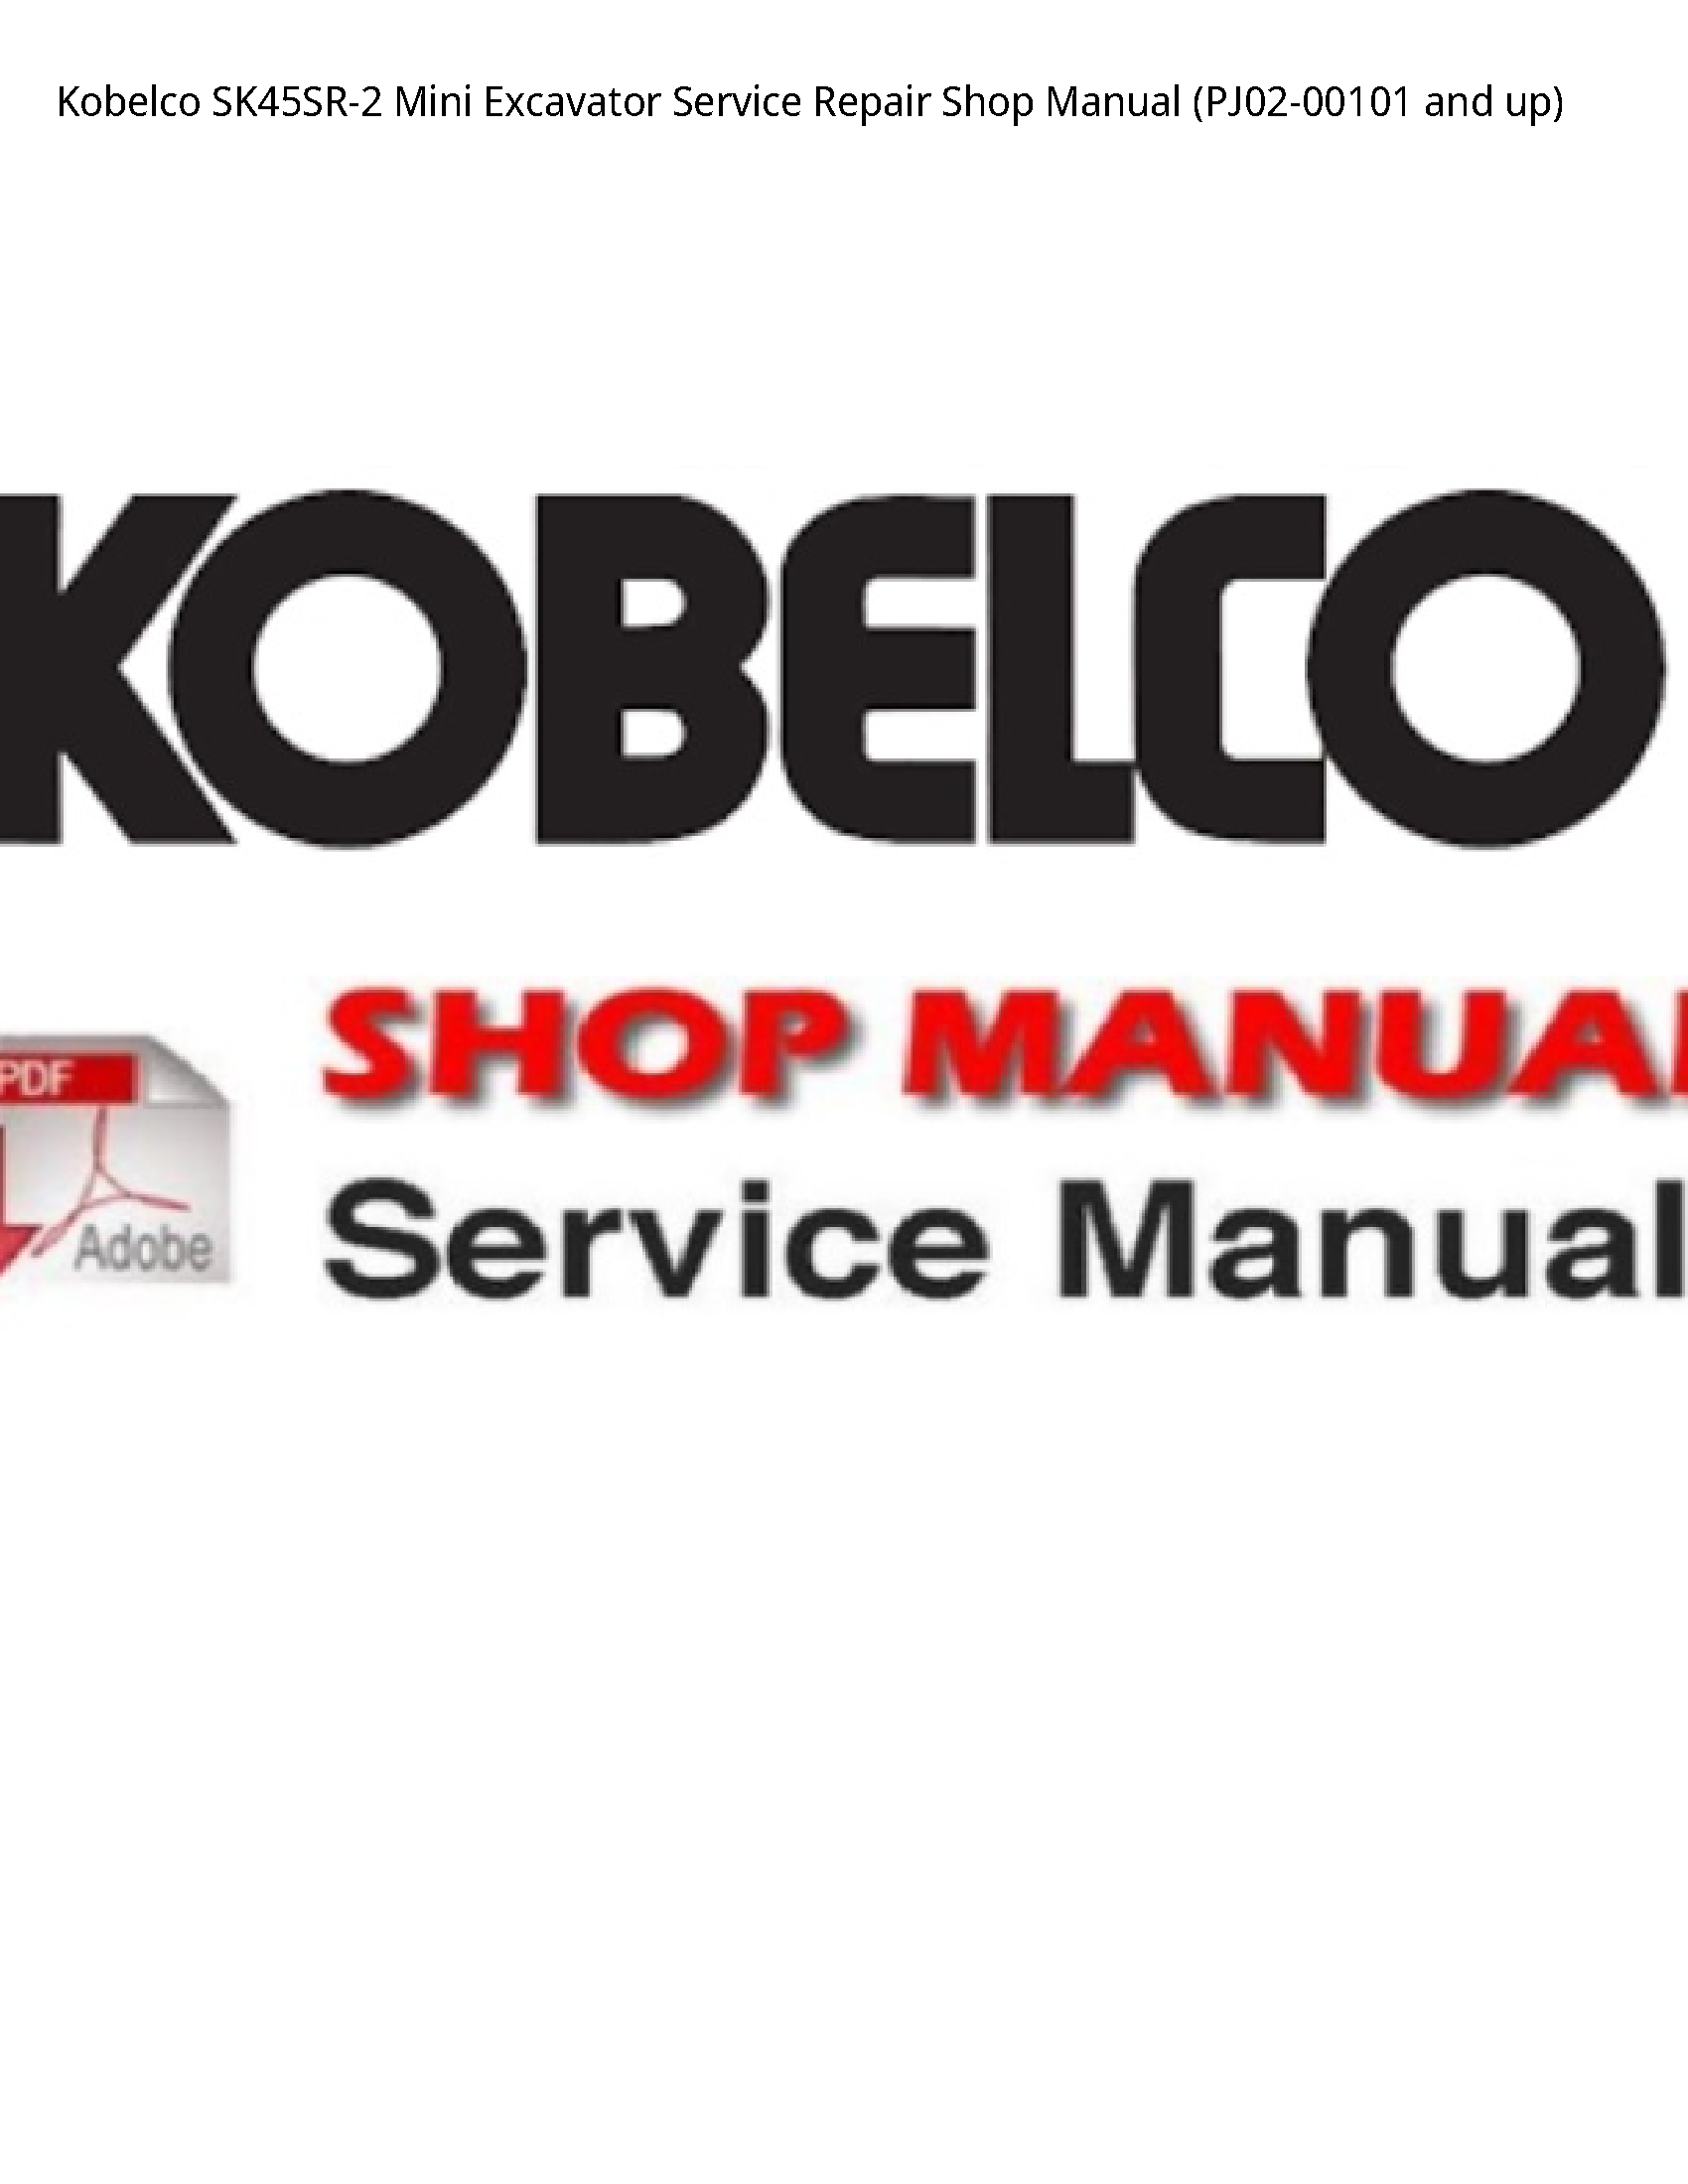 Kobelco SK45SR-2 Mini Excavator manual